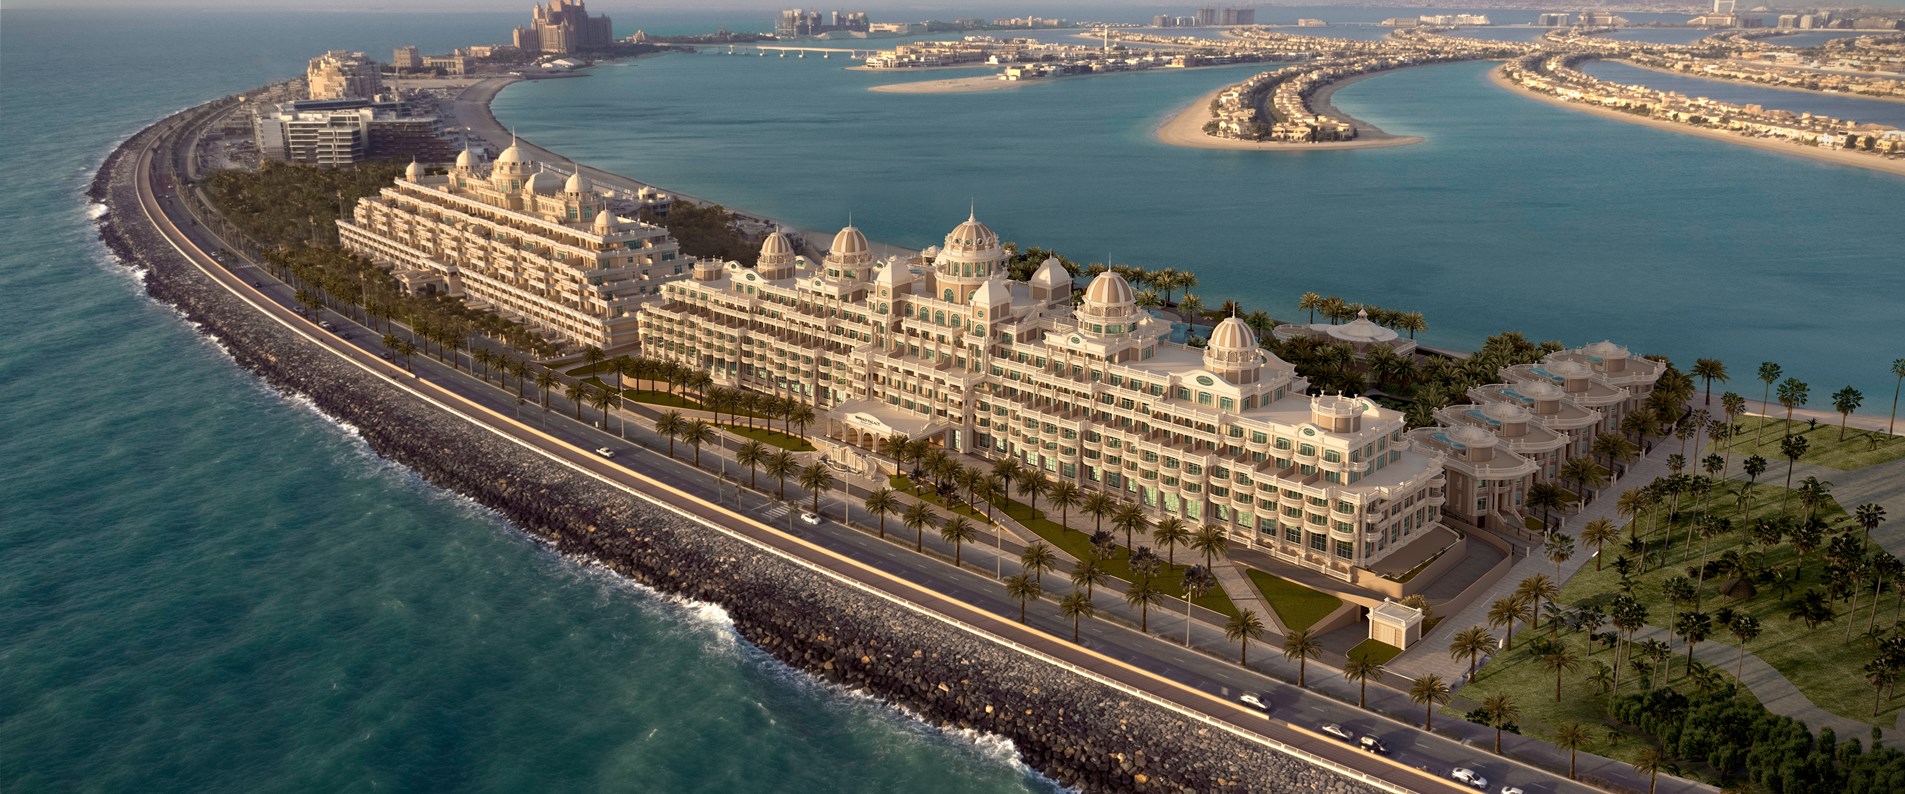 Emerald Palace Kempinski Hotel Project - Business Bay2